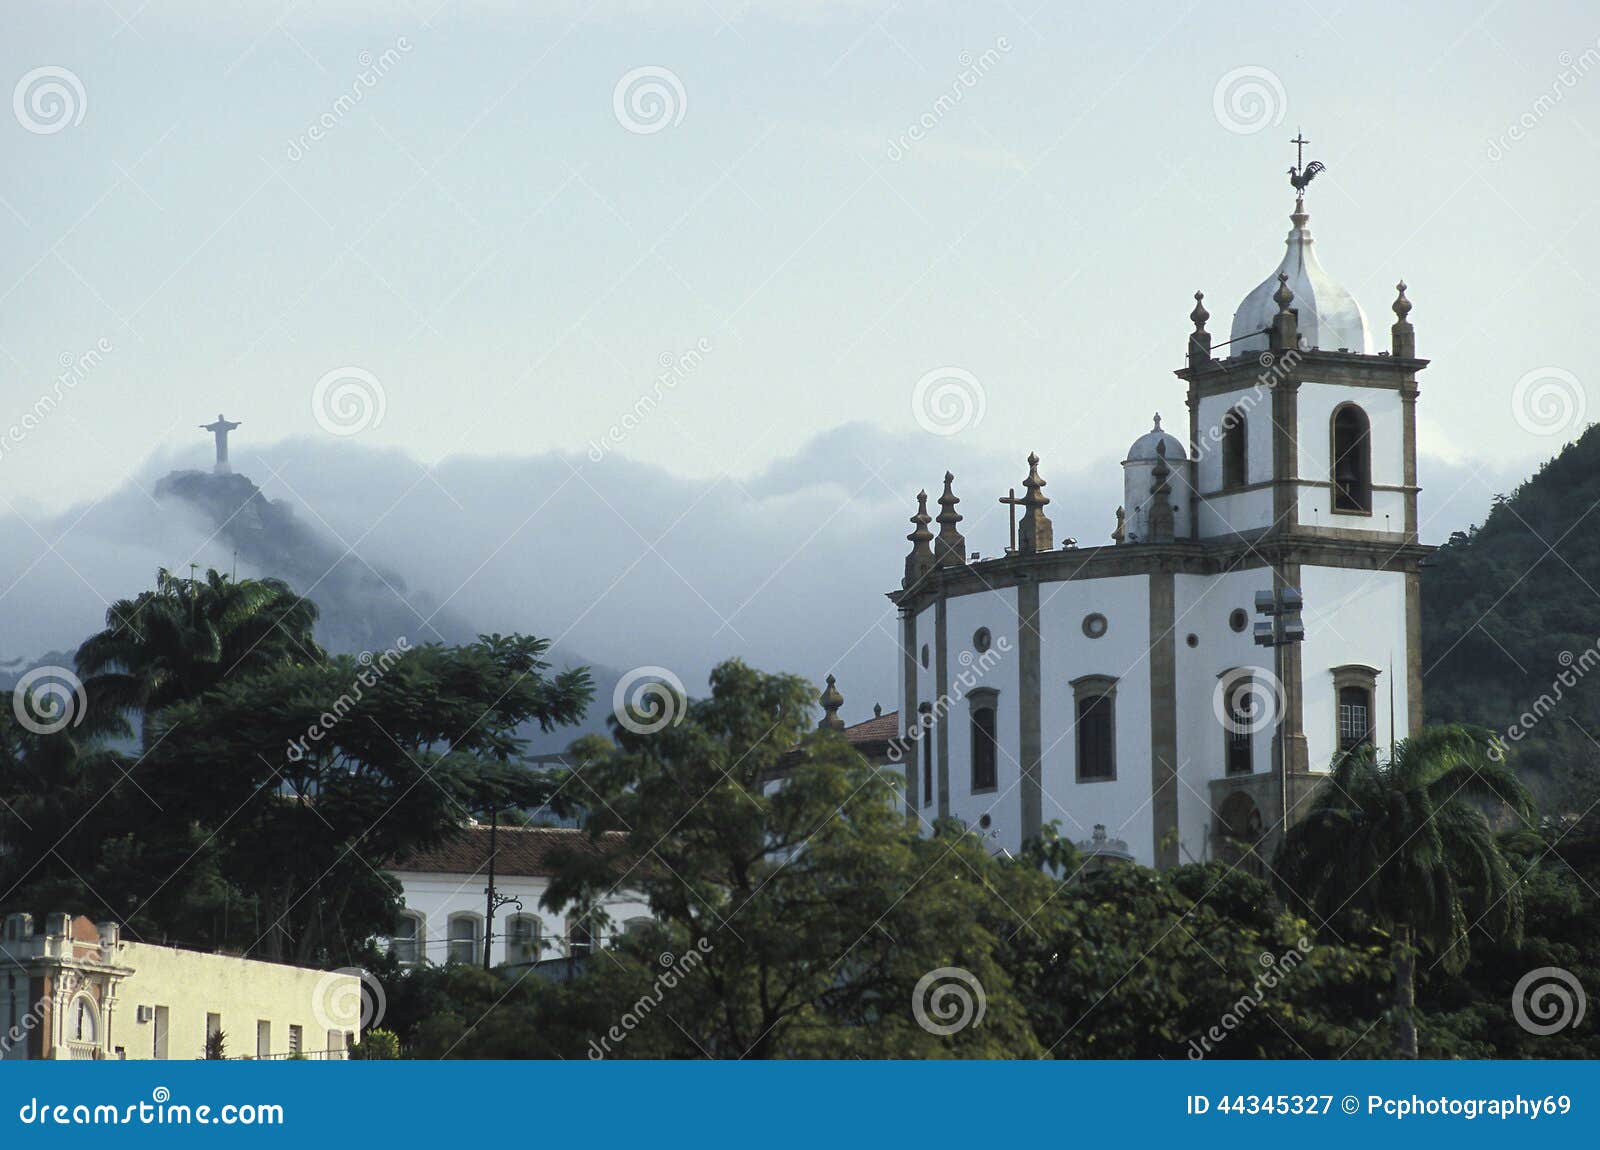 the church of nossa senhora da gloria do outeiro and the statue